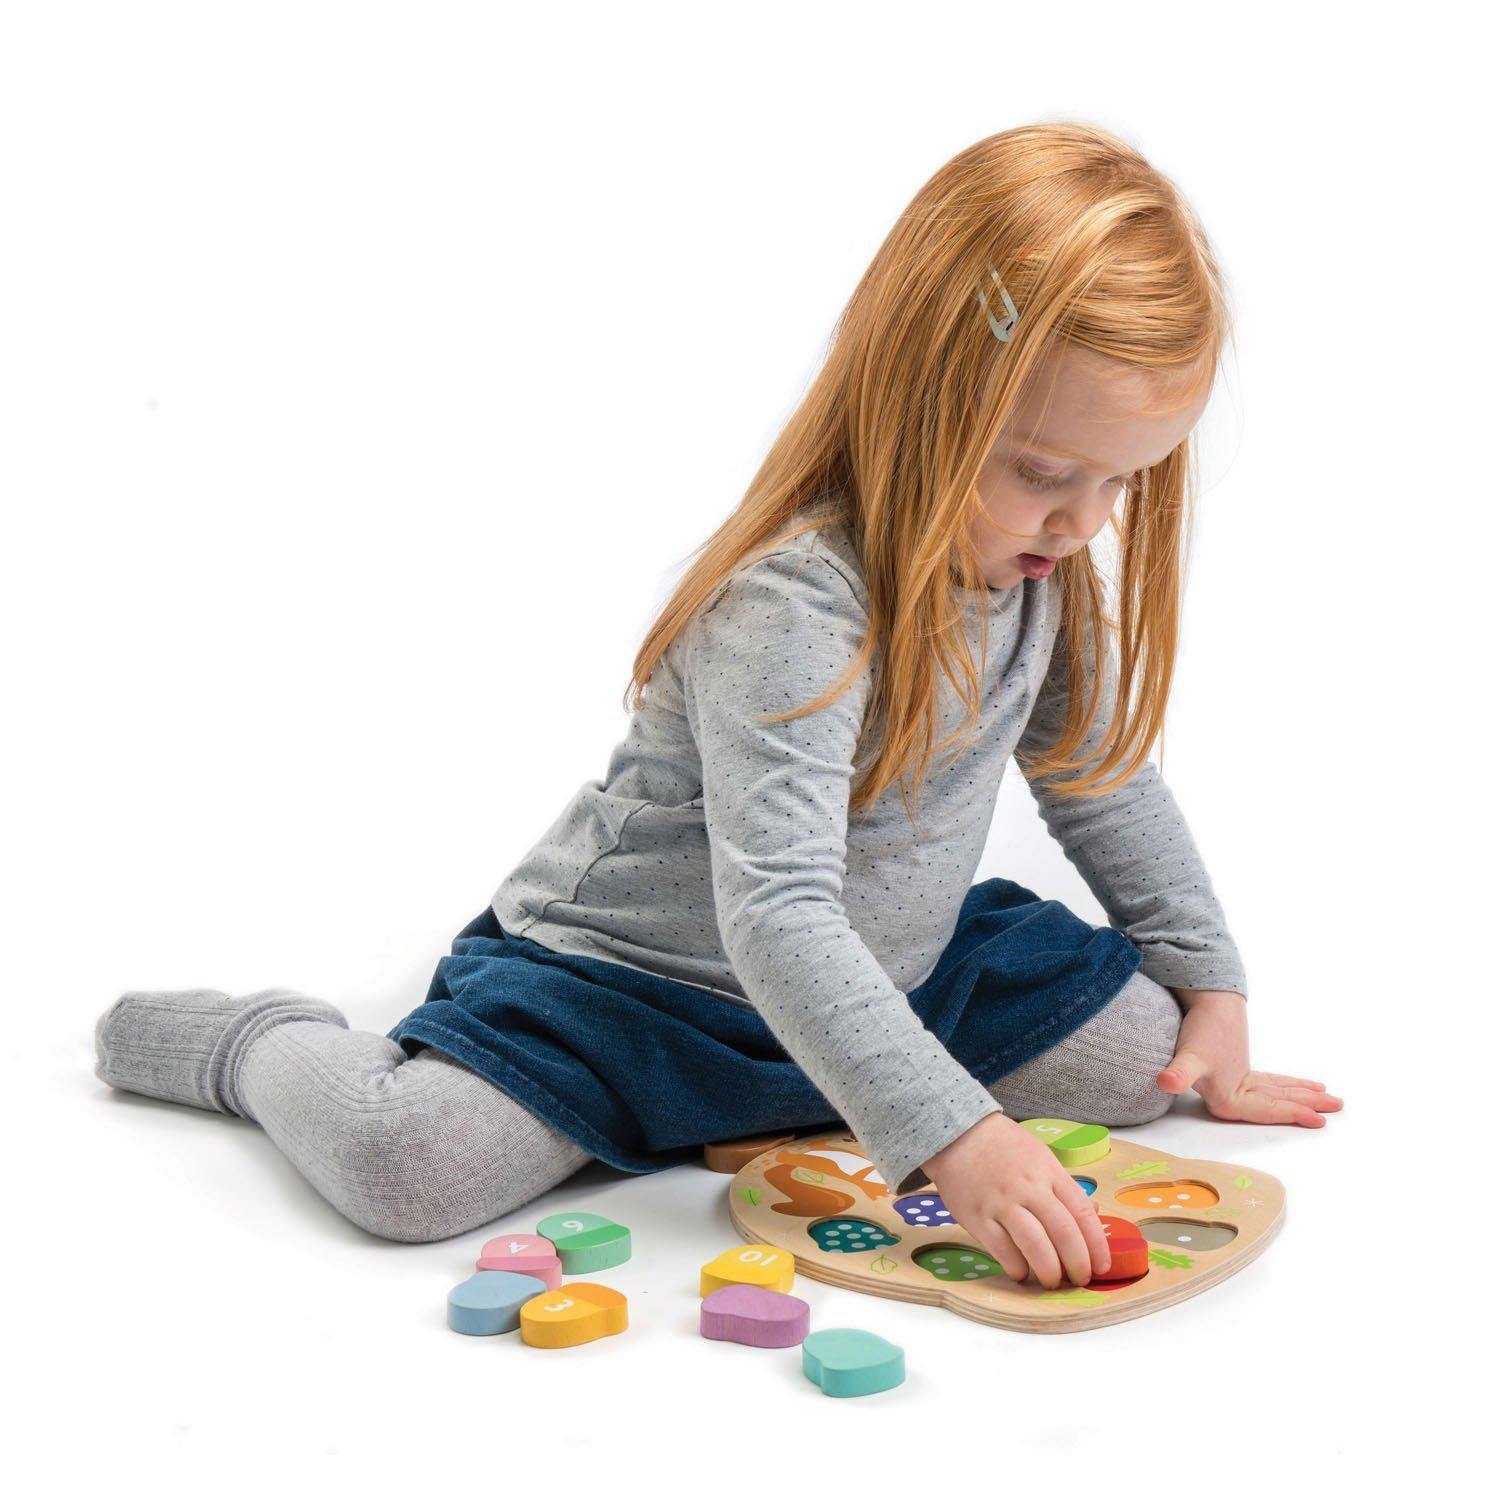 Oktató makkszámoló puzzle, prémium minőségű fából - How Many Acorns? - Tender Leaf Toys-Tender Leaf Toys-2-Játszma.ro - A maradandó élmények boltja